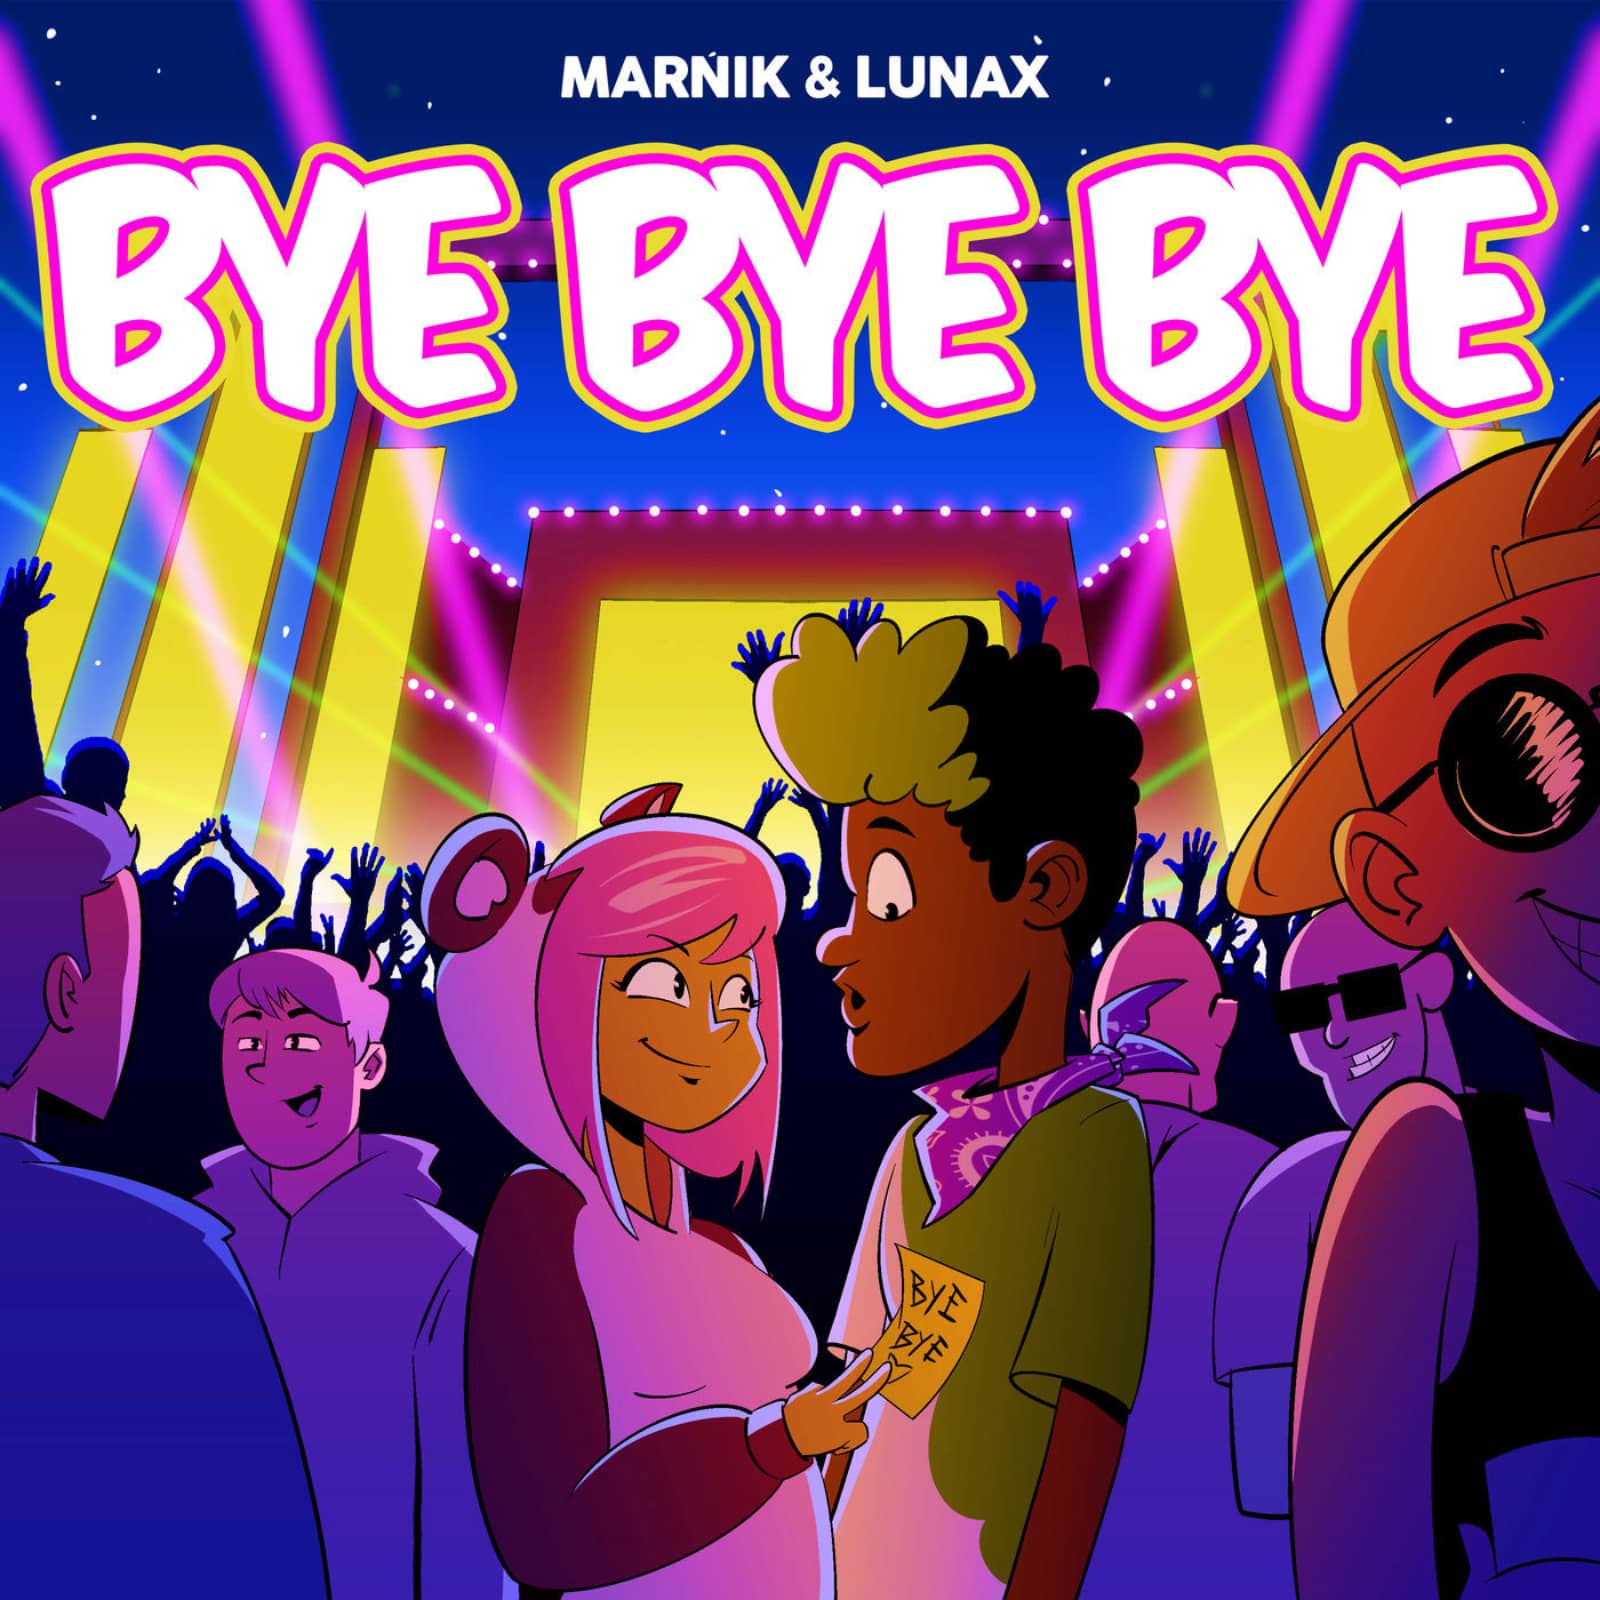 Bye bye song super. Bye Bye Bye Marnik, Lunax. Marnik. Платова в.е. "Bye-Bye, Baby!". Трек Bye Bye.